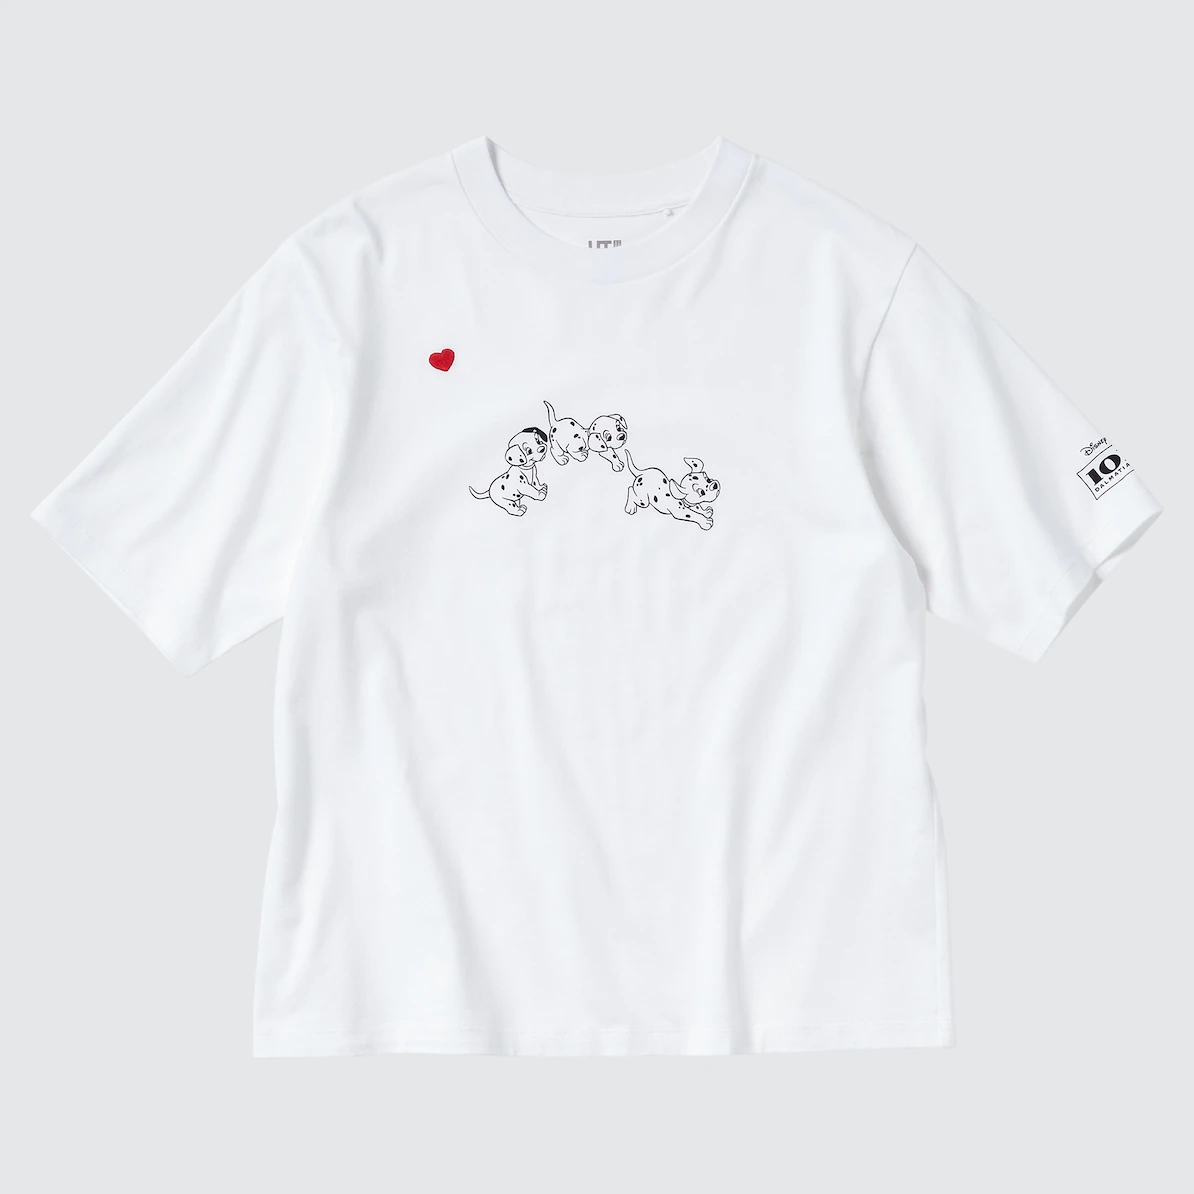 UNIQLO(ユニクロ) ディズニー ファーリー フレンズ UT グラフィックTシャツ 101匹わんちゃん（半袖・リラックスフィット）の商品画像3 